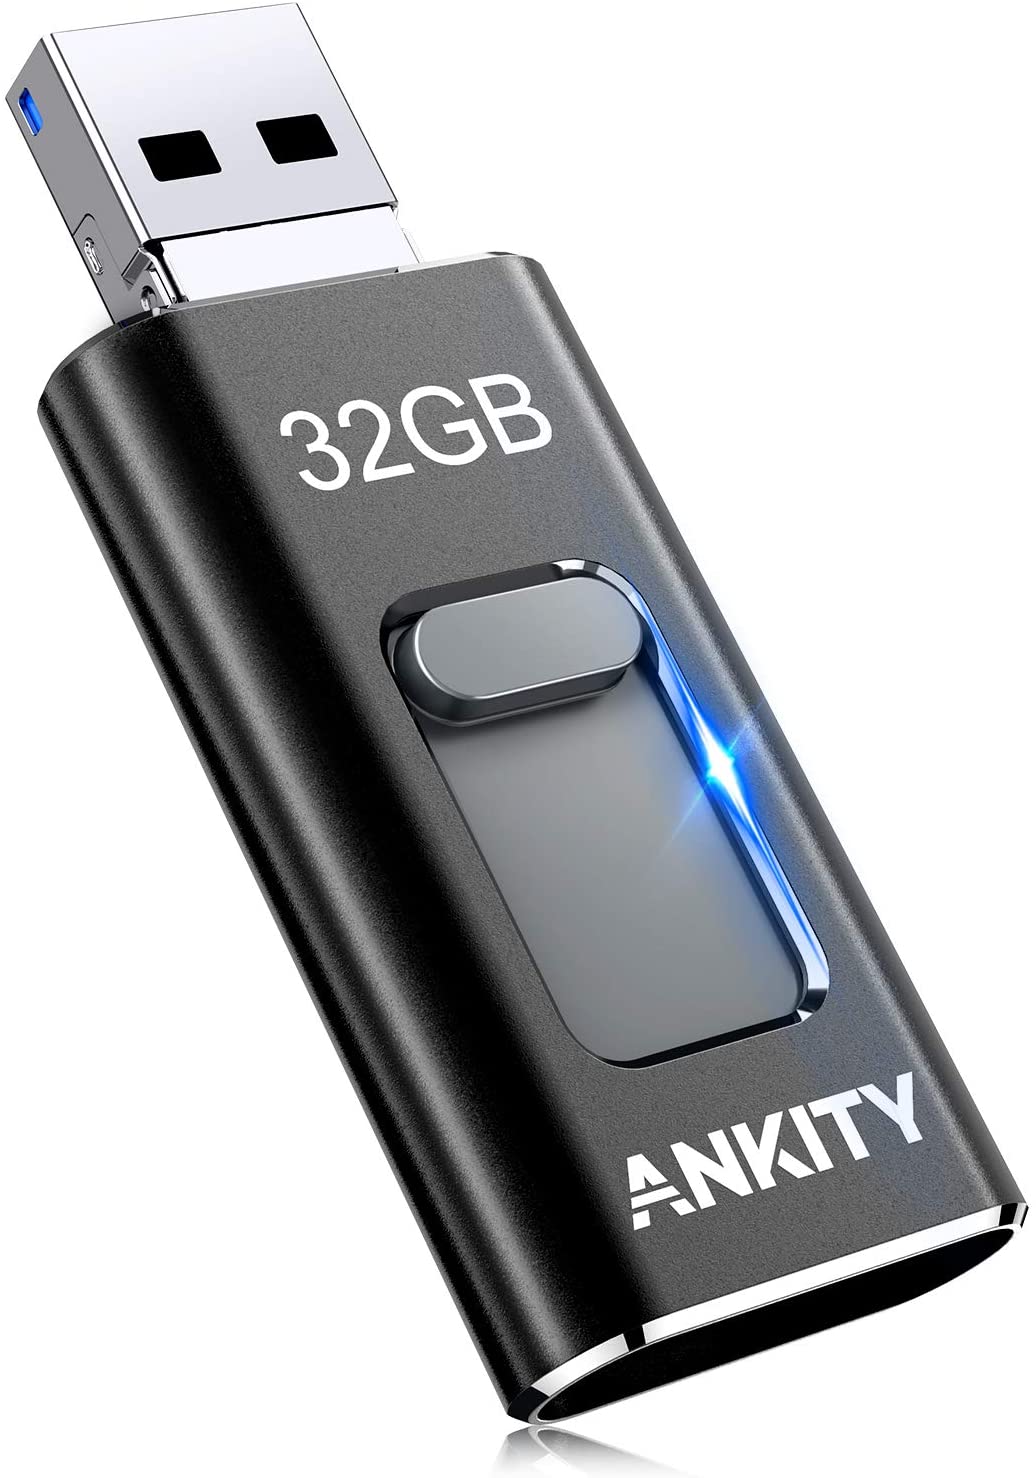 フラッシュドライブ 3in1 USBメモリ 32GB 日本語取扱説明書 スライド式 NEW売り切れる前に☆ 送料無料 高速転送 携帯便利 新作 フラッシュドライブUSBメモリ回転式3合1外付ブラック iphone